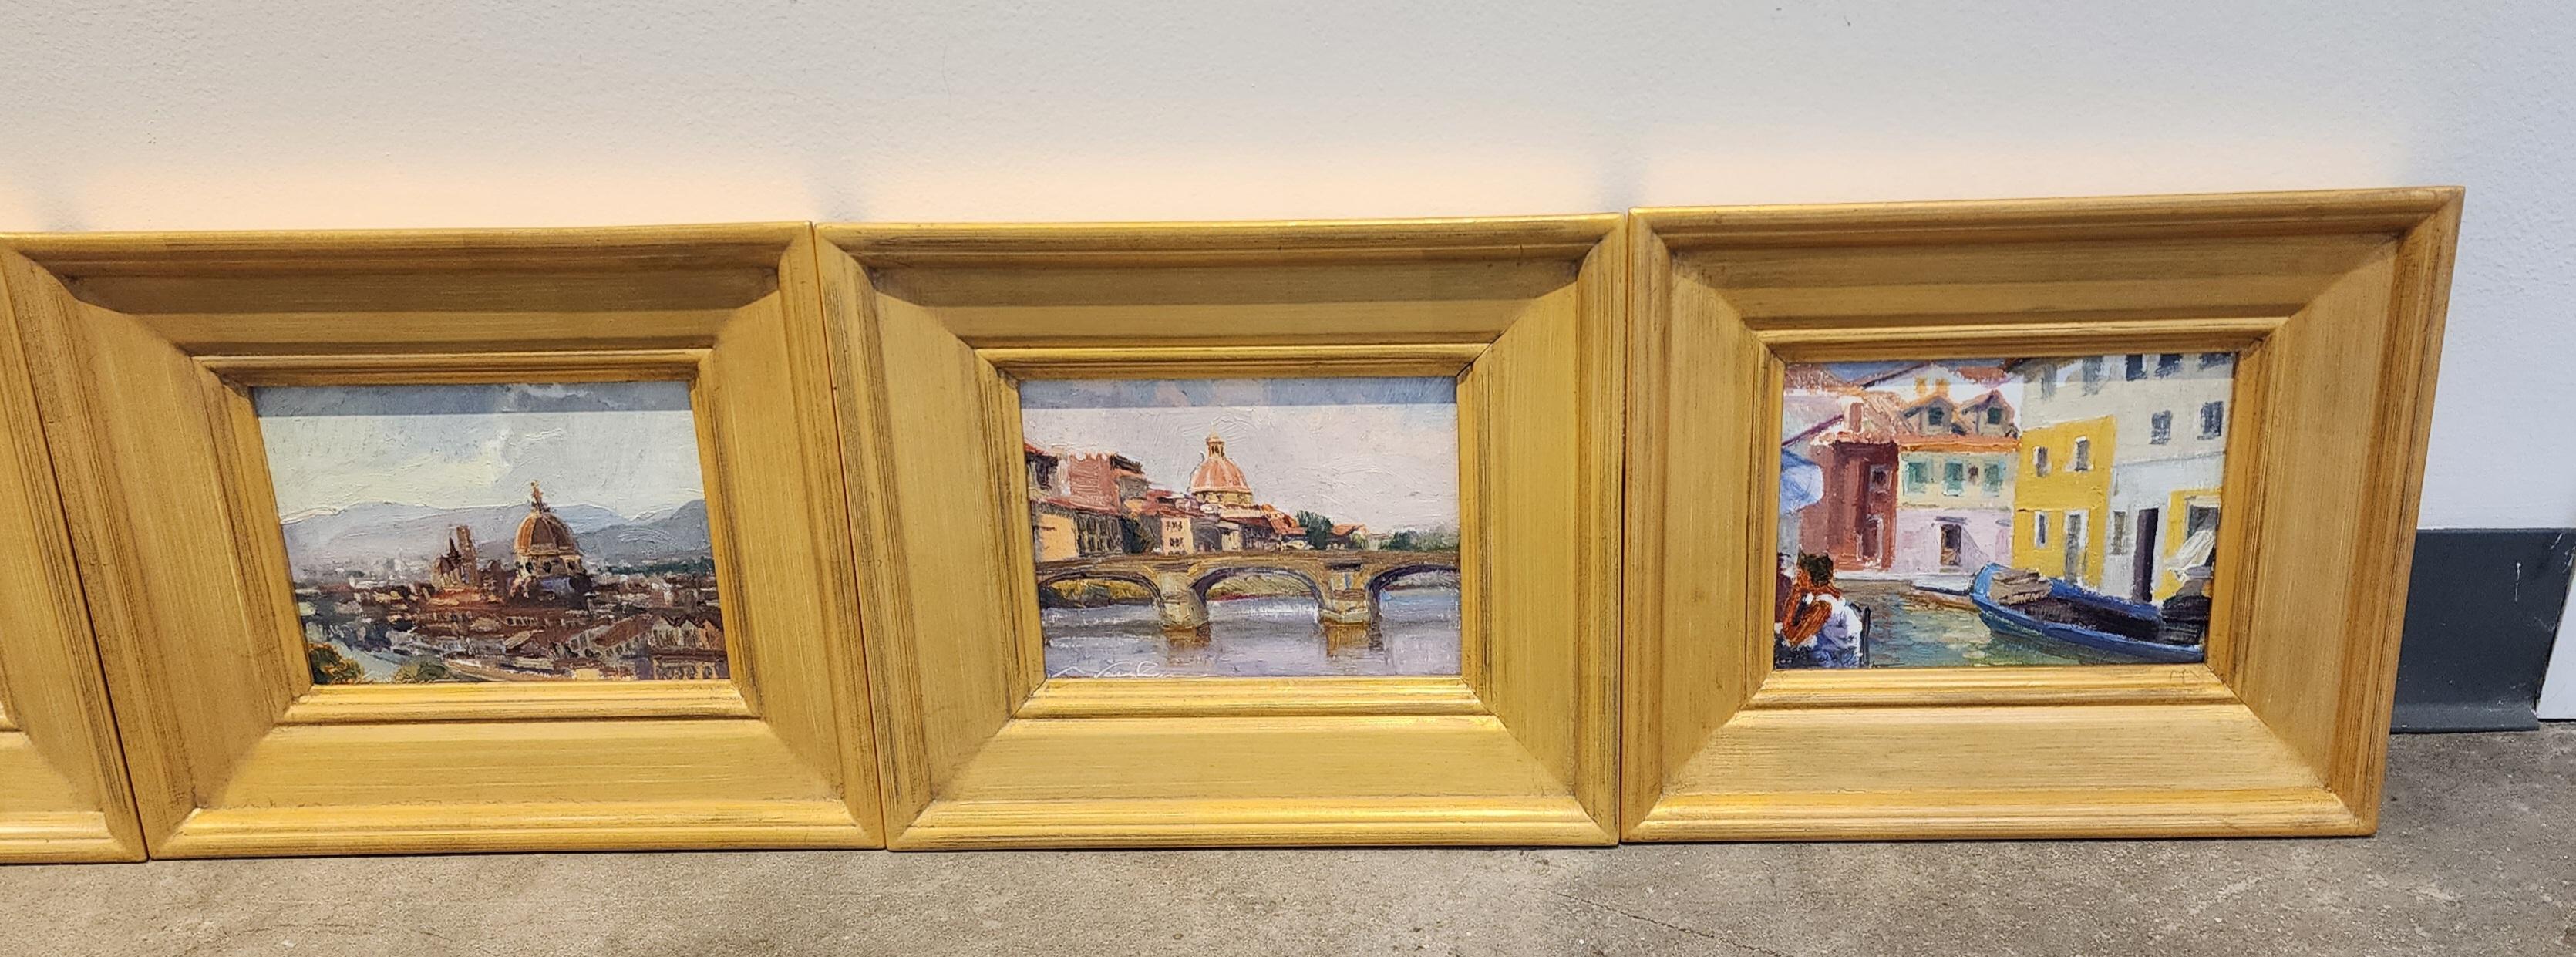 Harbor Dawn, Rockport, Impressionism , Seascape, Framed, Texas Gulf Coast For Sale 9